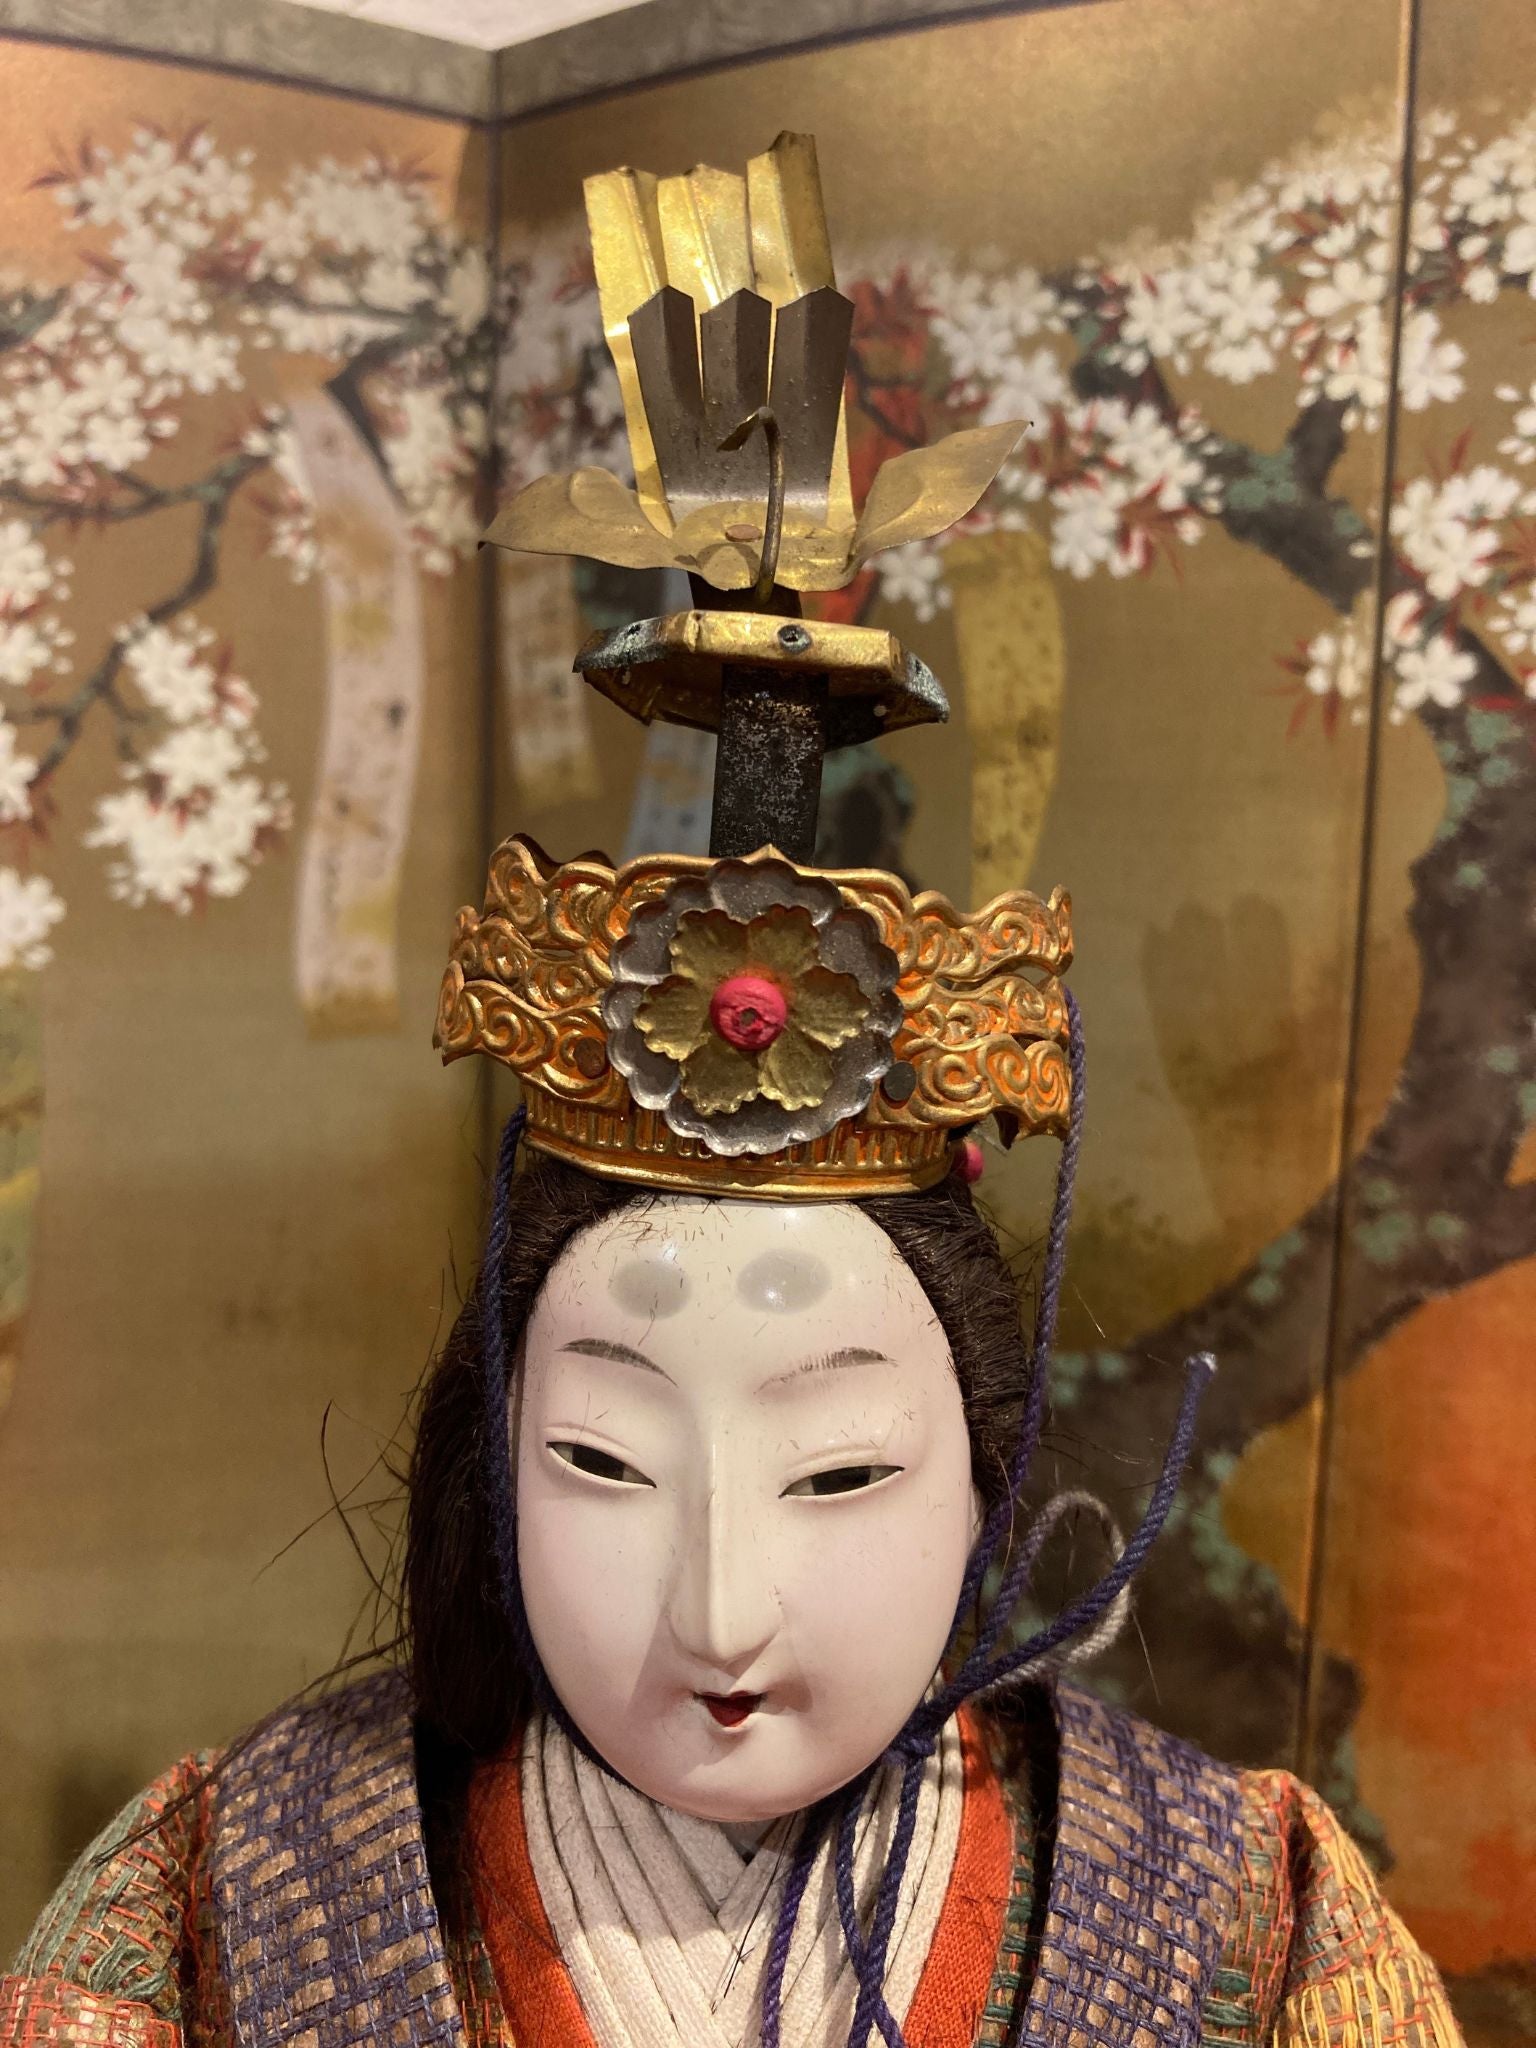 poupées japonaises pour la fête de Hina Matsuri (la fête des filles), représentant l'Empereur et l'Impératrice tete imperatrice